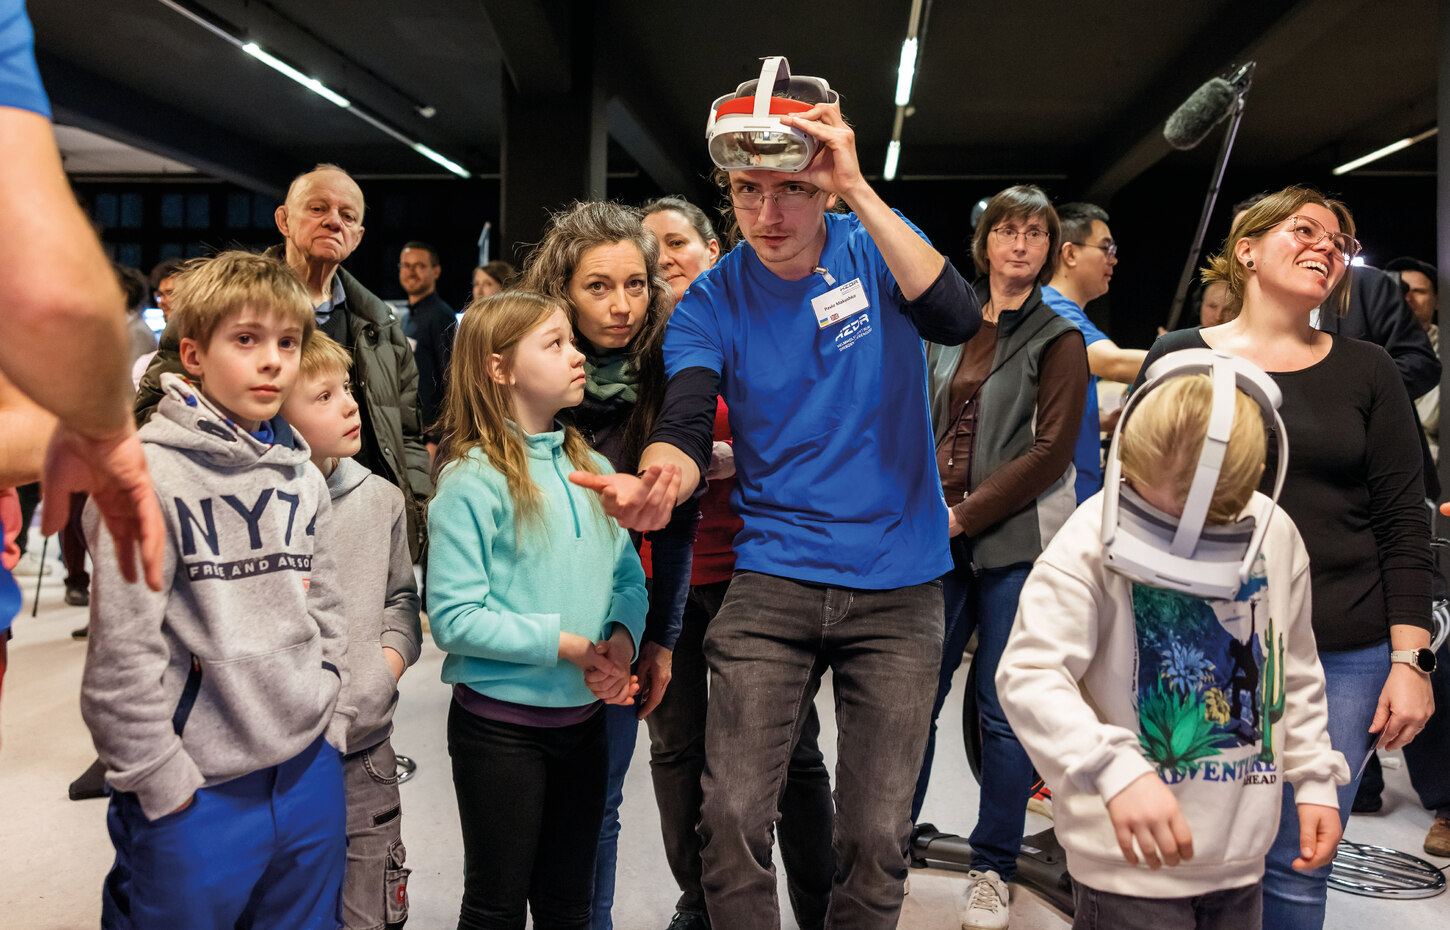 Einige Kinder und Erwachsene blicken interessiert einen Mann mit blauem T-shirt an, der eine technische Brille auf dem Kopf trägt und gestikuliert.